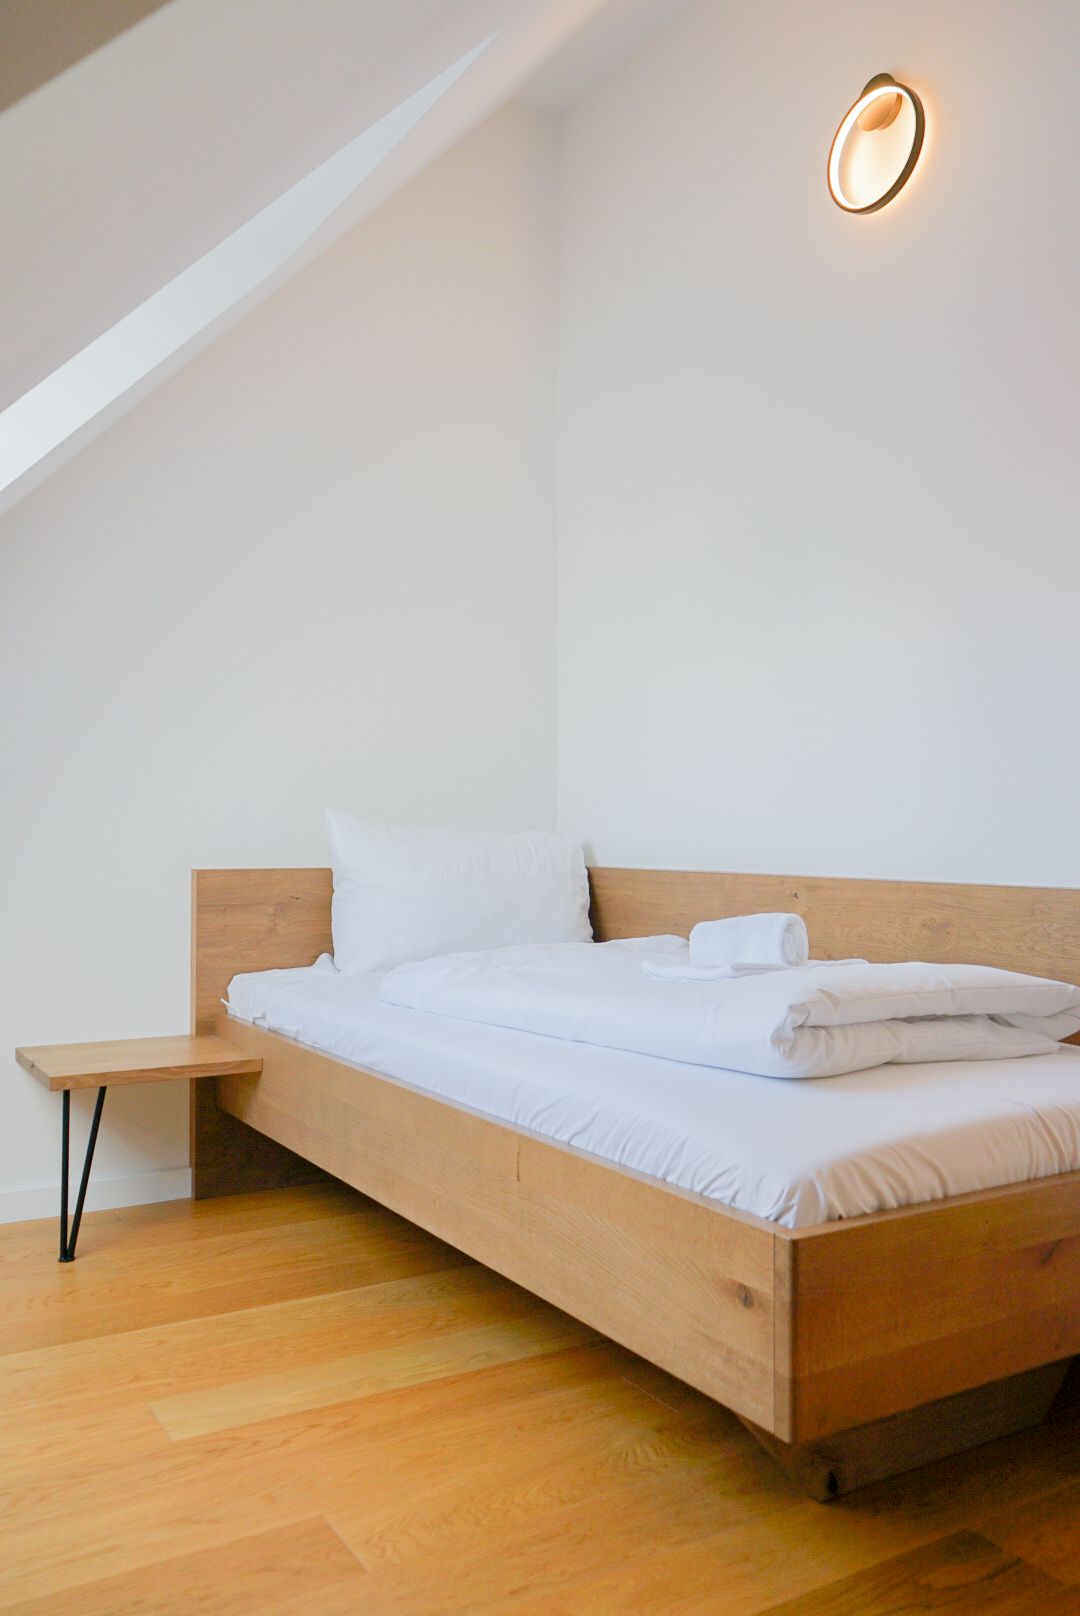 Komplett ausgestattetes Apartment für einen erholsamen Aufenthalt in Wien